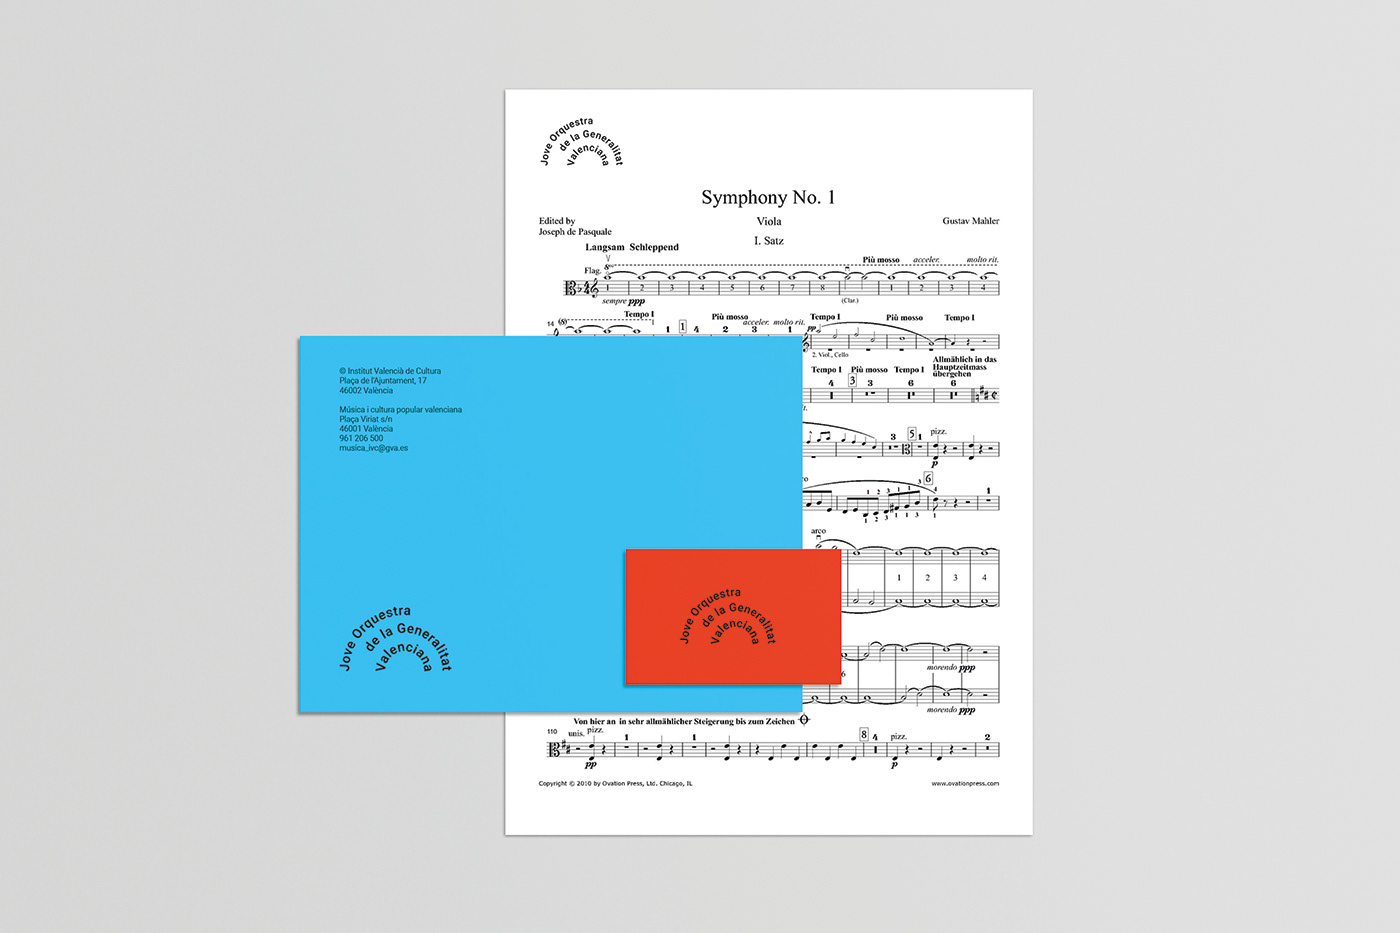 diseño musica music orquestra logo valencia brand spain orquesta Classic